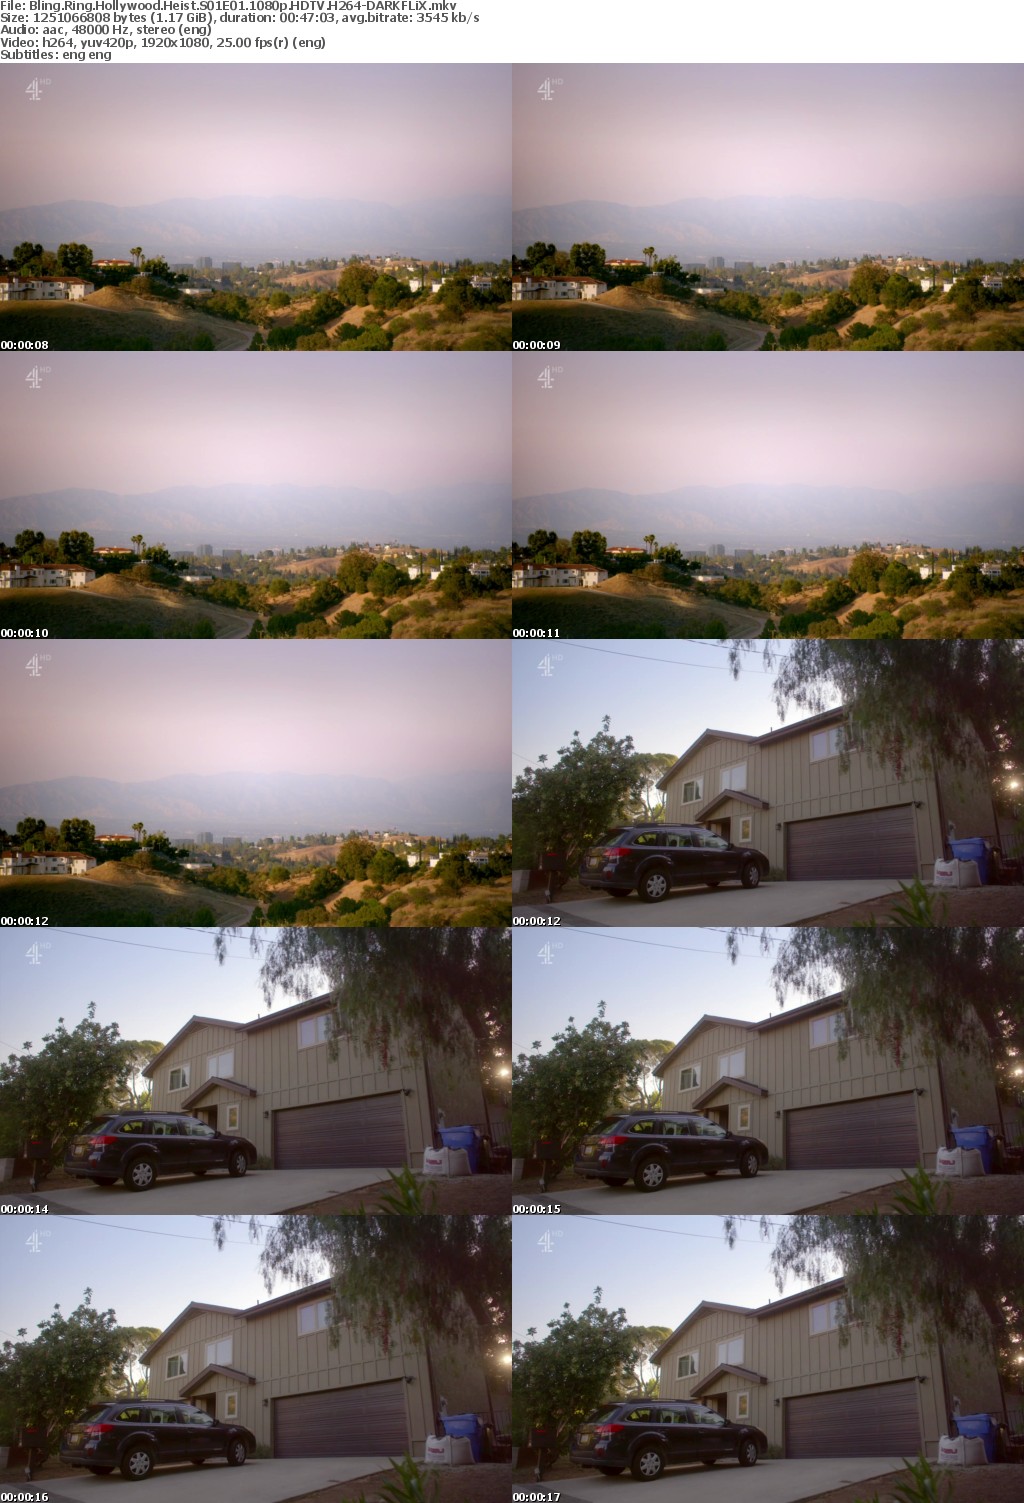 Bling Ring Hollywood Heist S01E01 1080p HDTV H264-DARKFLiX